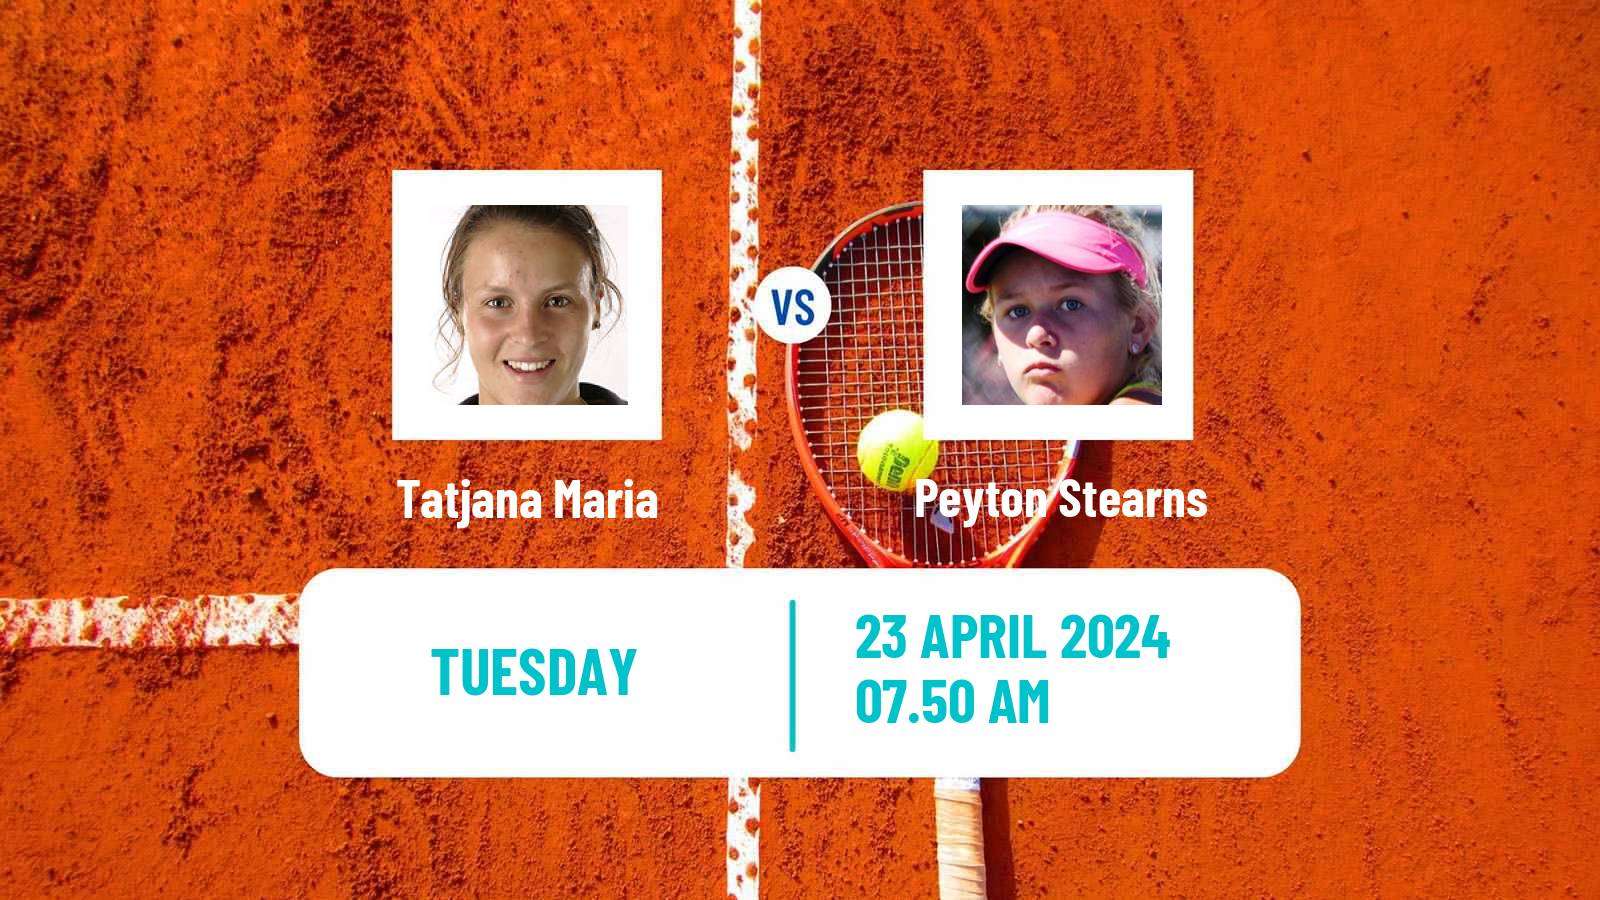 Tennis WTA Madrid Tatjana Maria - Peyton Stearns